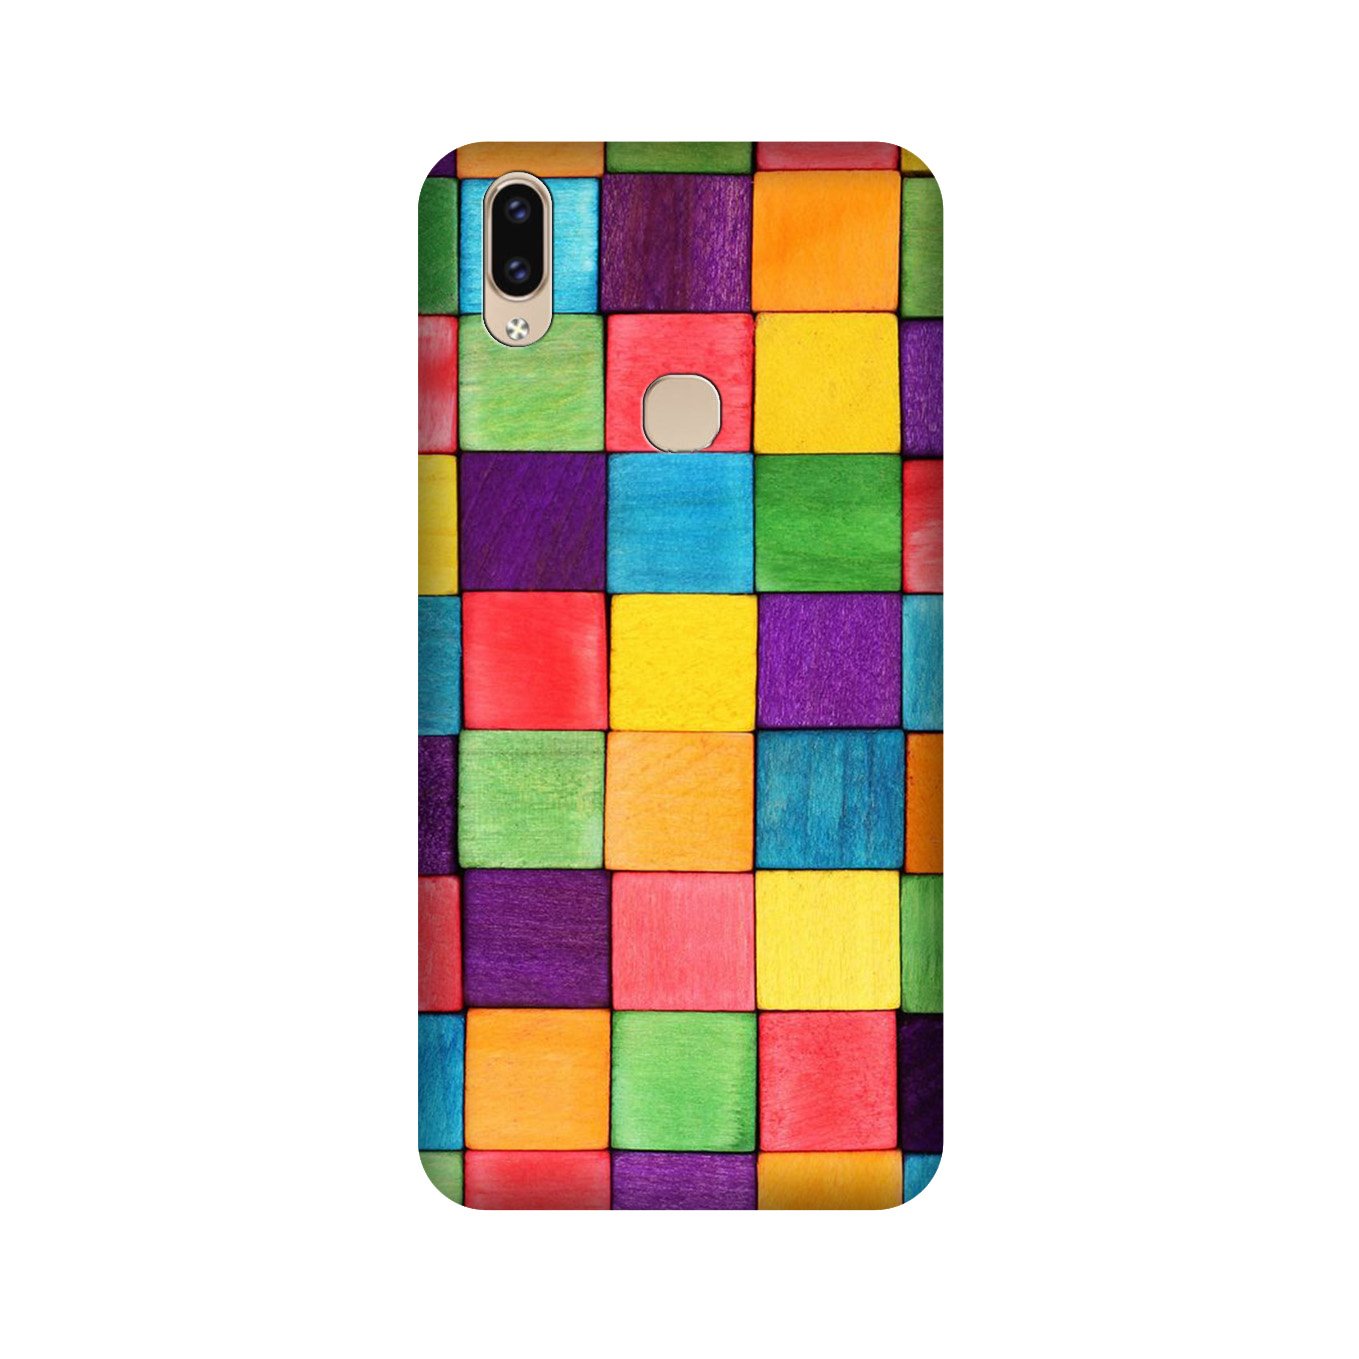 Colorful Square Case for Vivo V9 pro (Design No. 218)